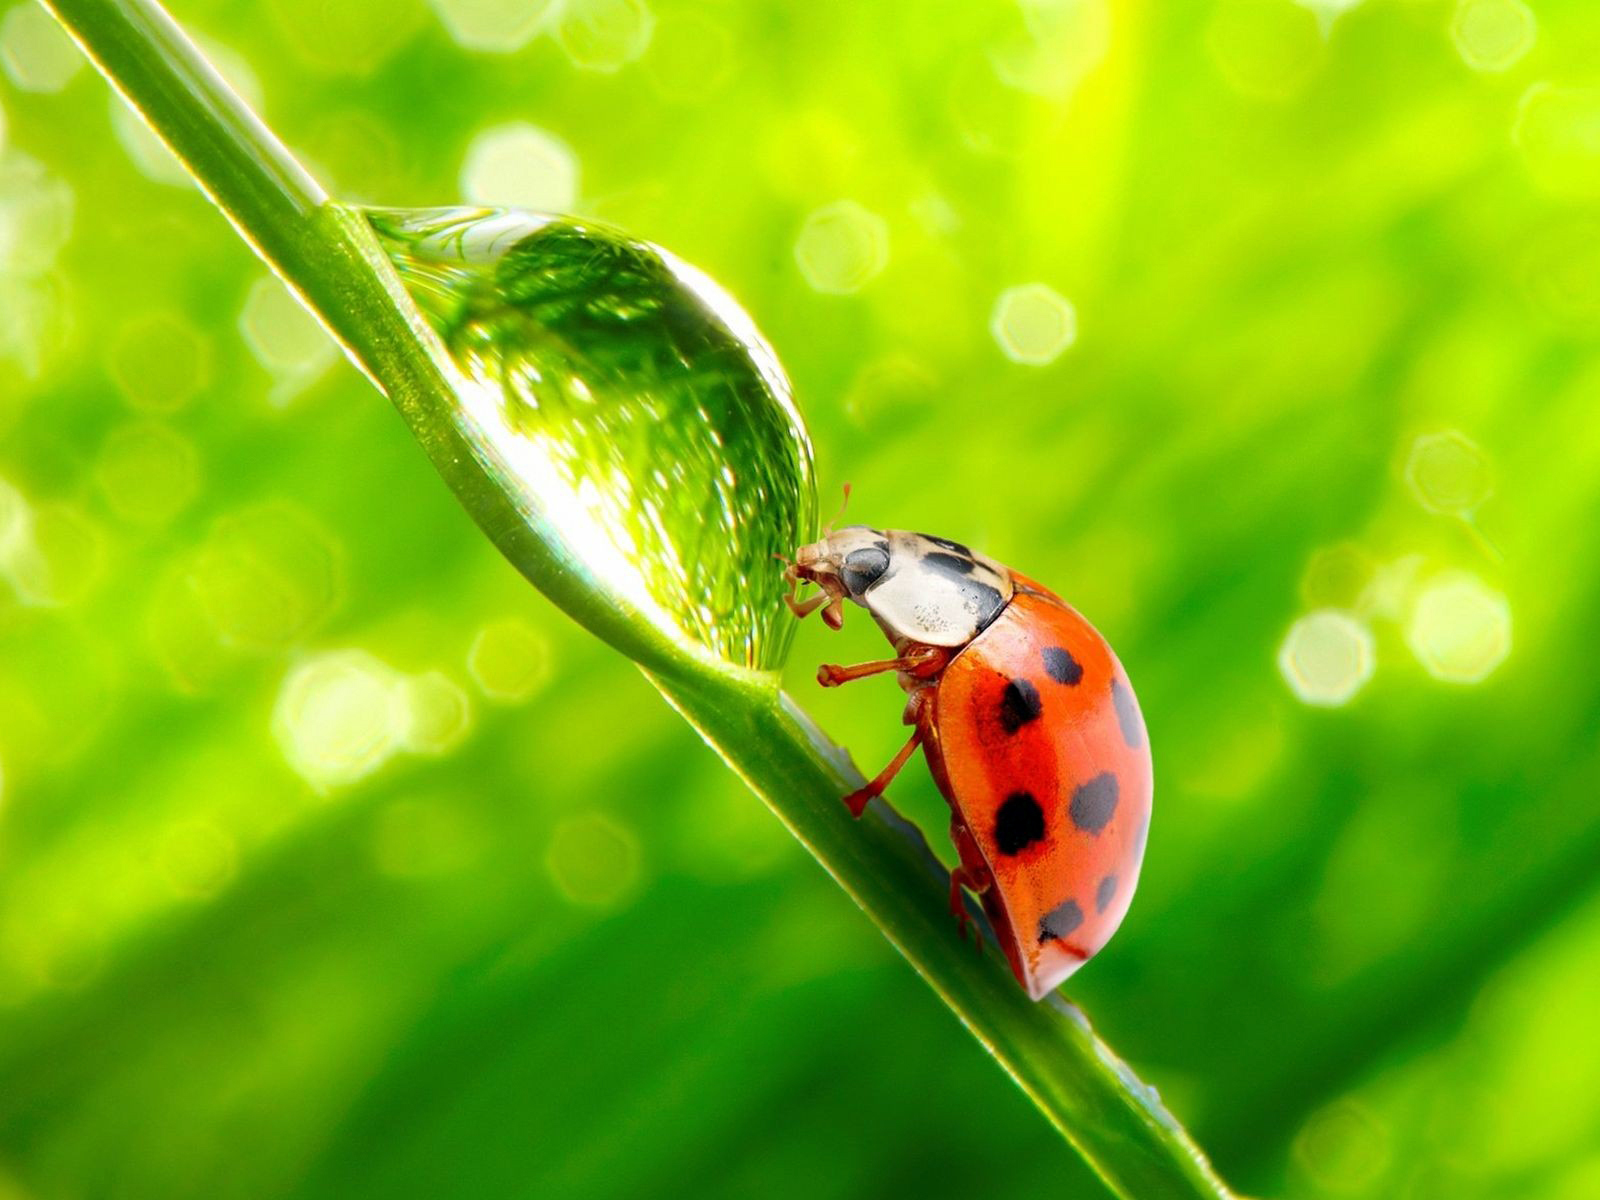 Ladybug On Leaf Green Blurred Lights HD Wallpaper Nature